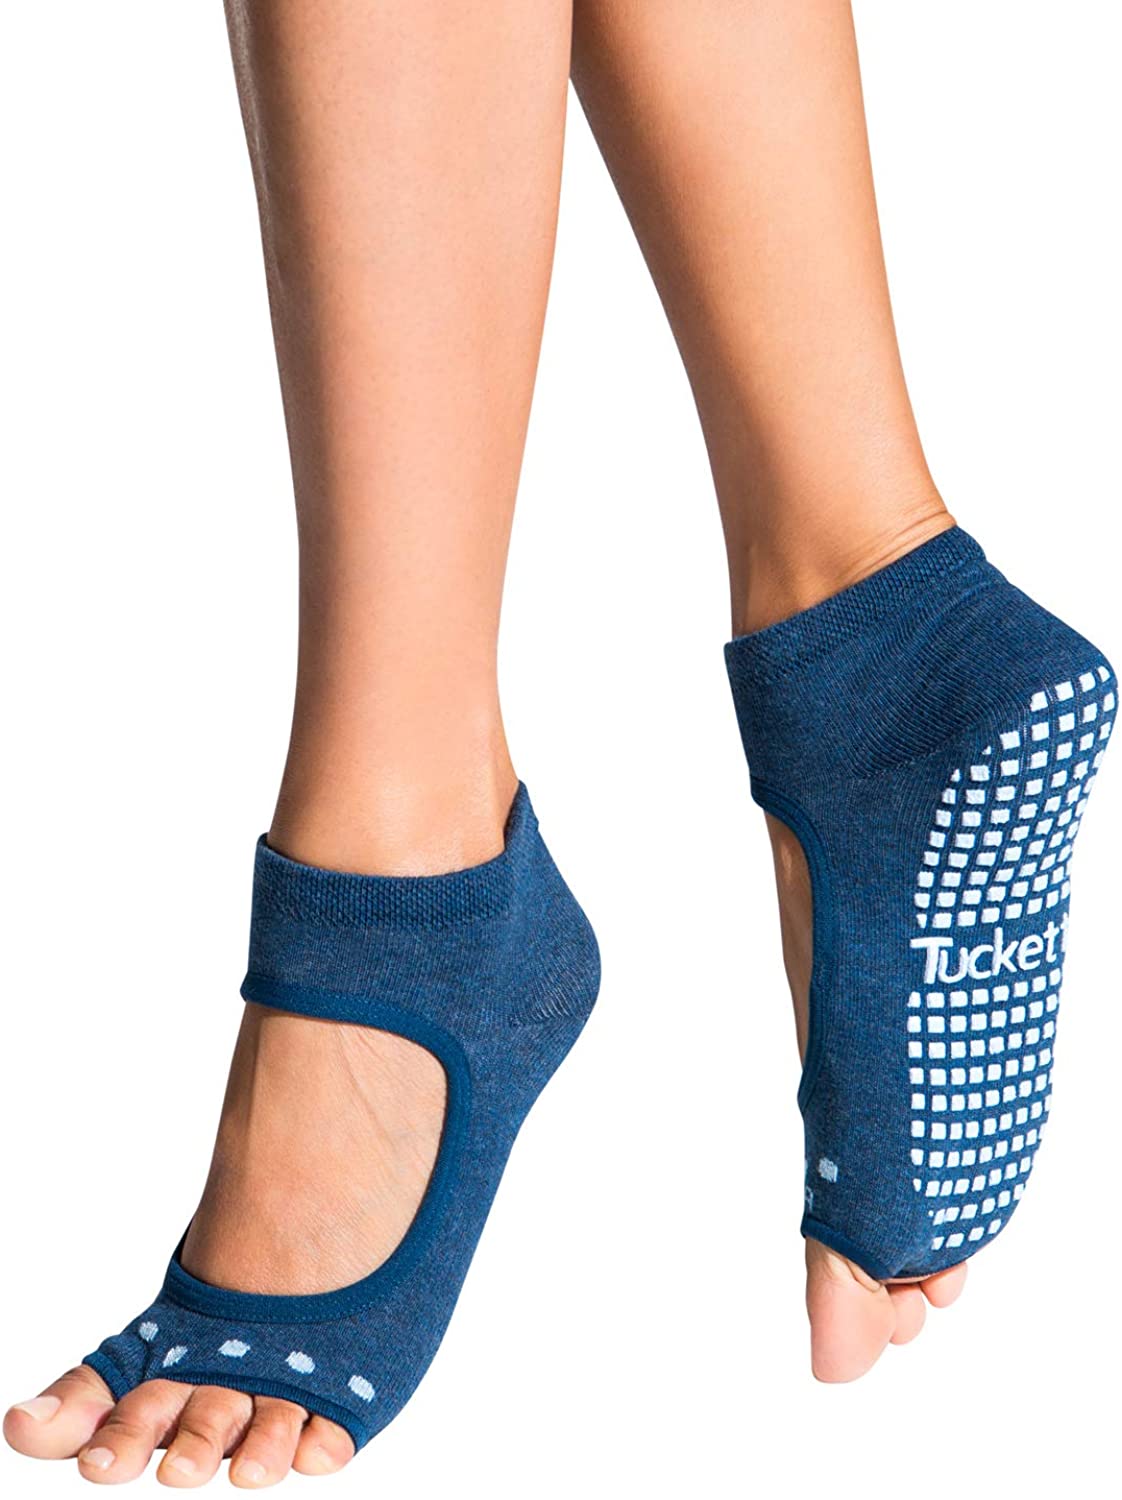 Handepo 6 pares de calcetines largos de pilates para mujer, calcetines de  yoga con agarres, antideslizantes, calcetines largos para barre, yoga